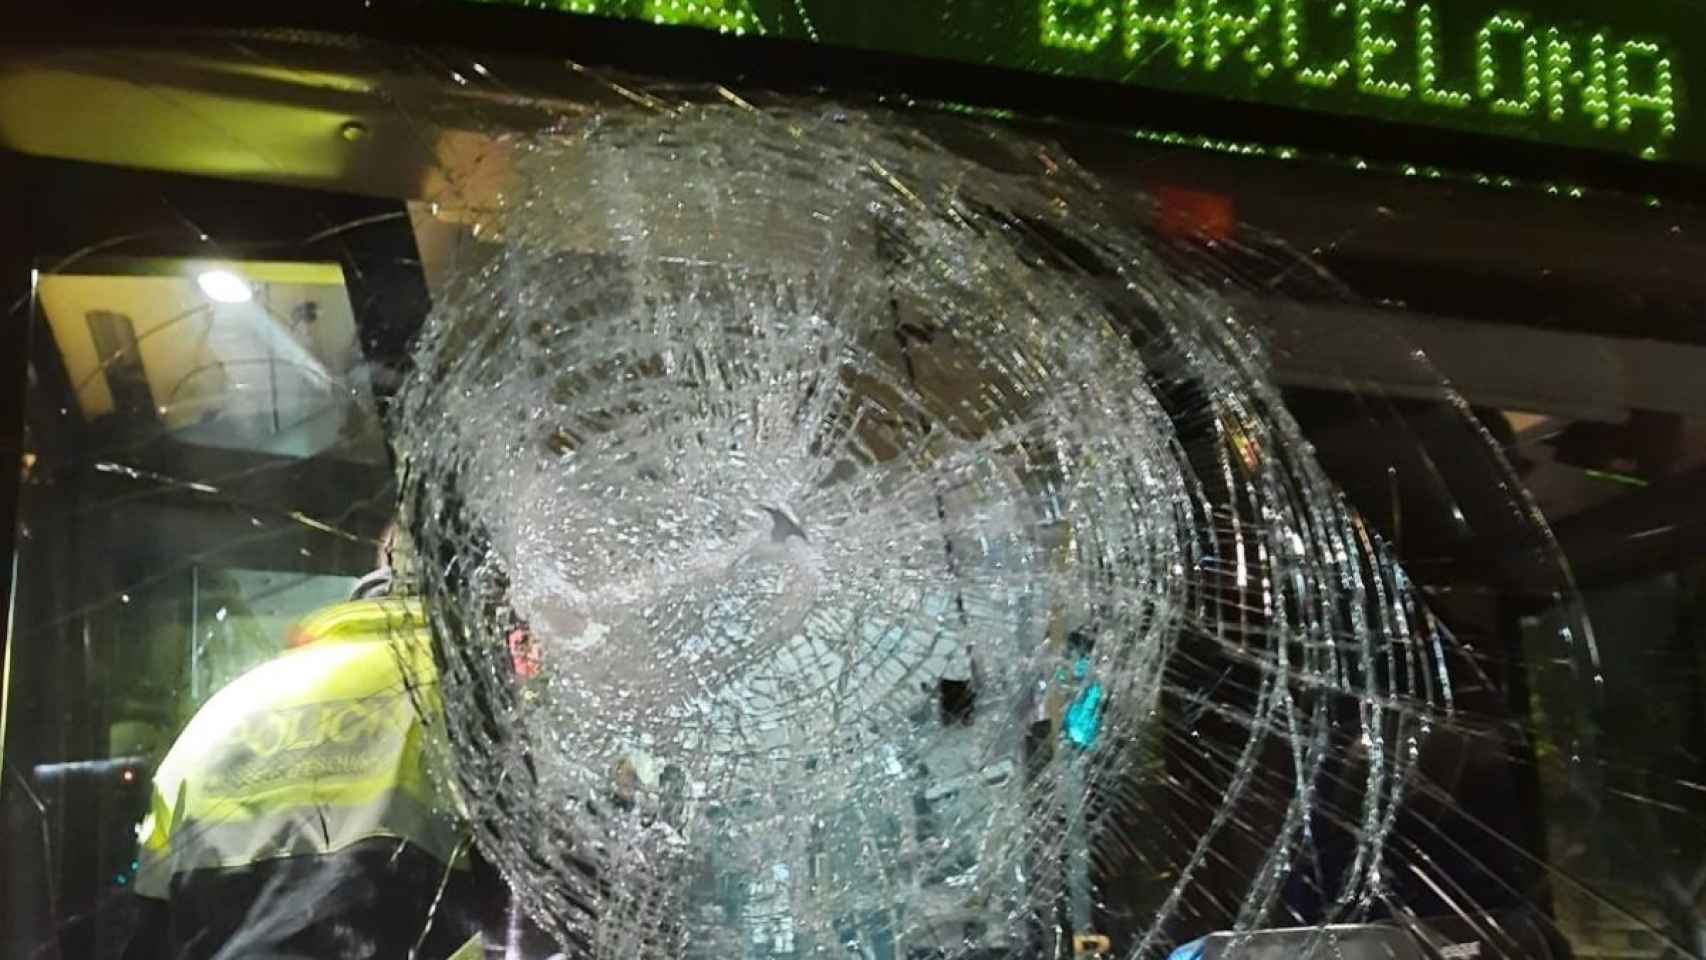 Cristal delantero de un autobús público roto tras un ataque / CEDIDA